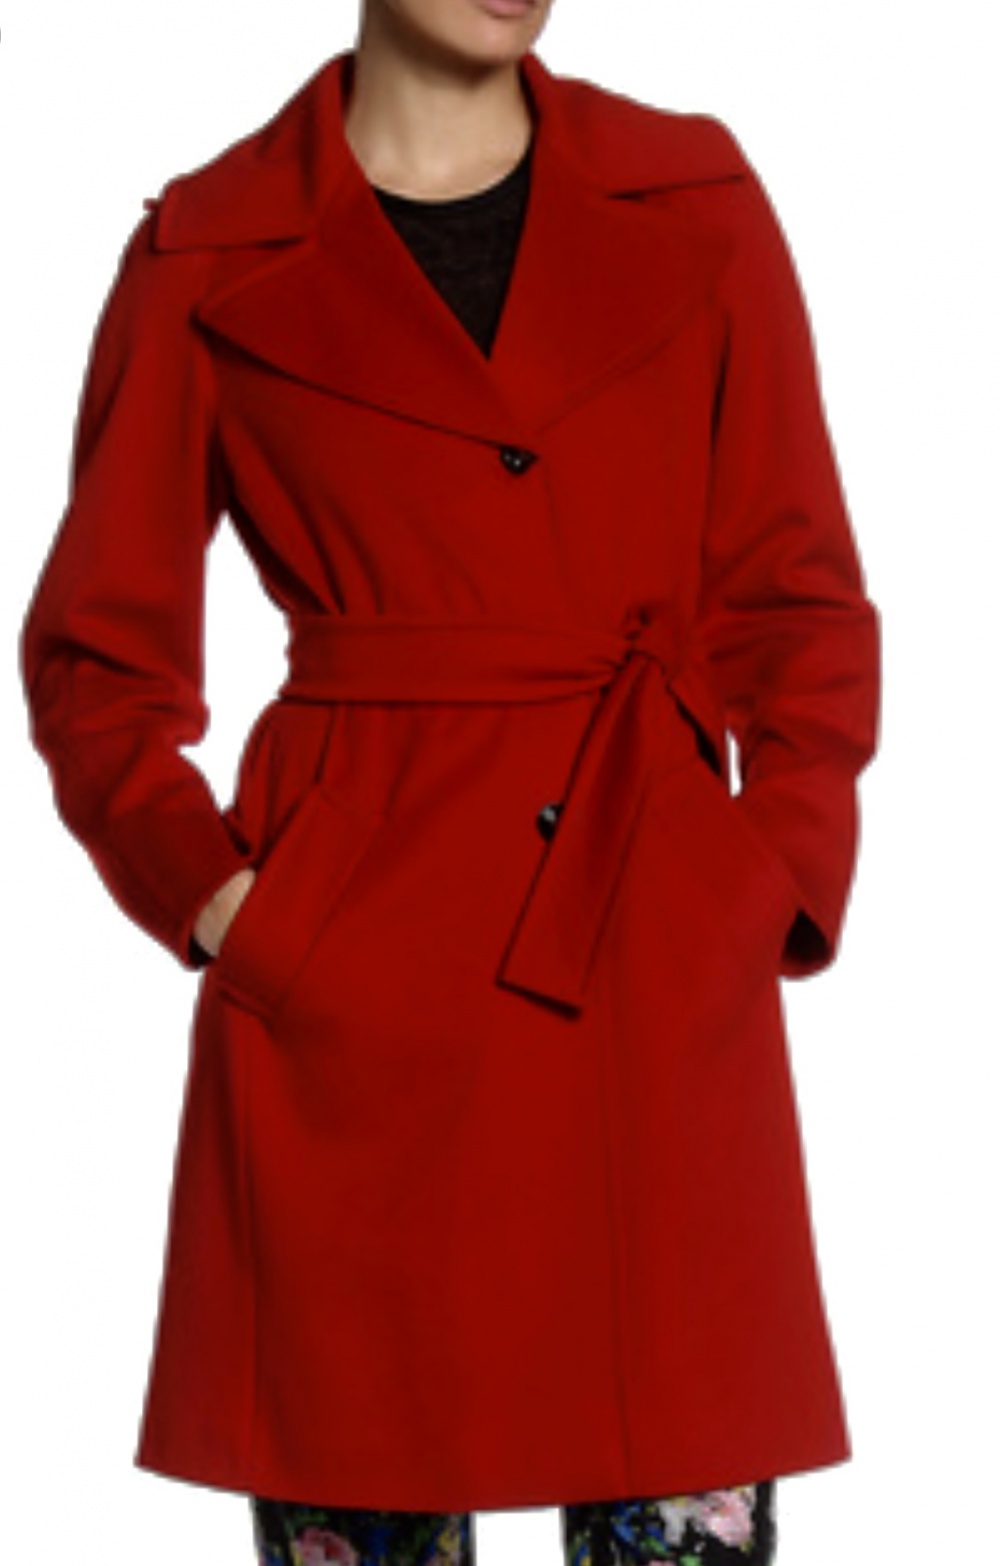 Пальто Marella Max Mara, размер М, 100% шерсть